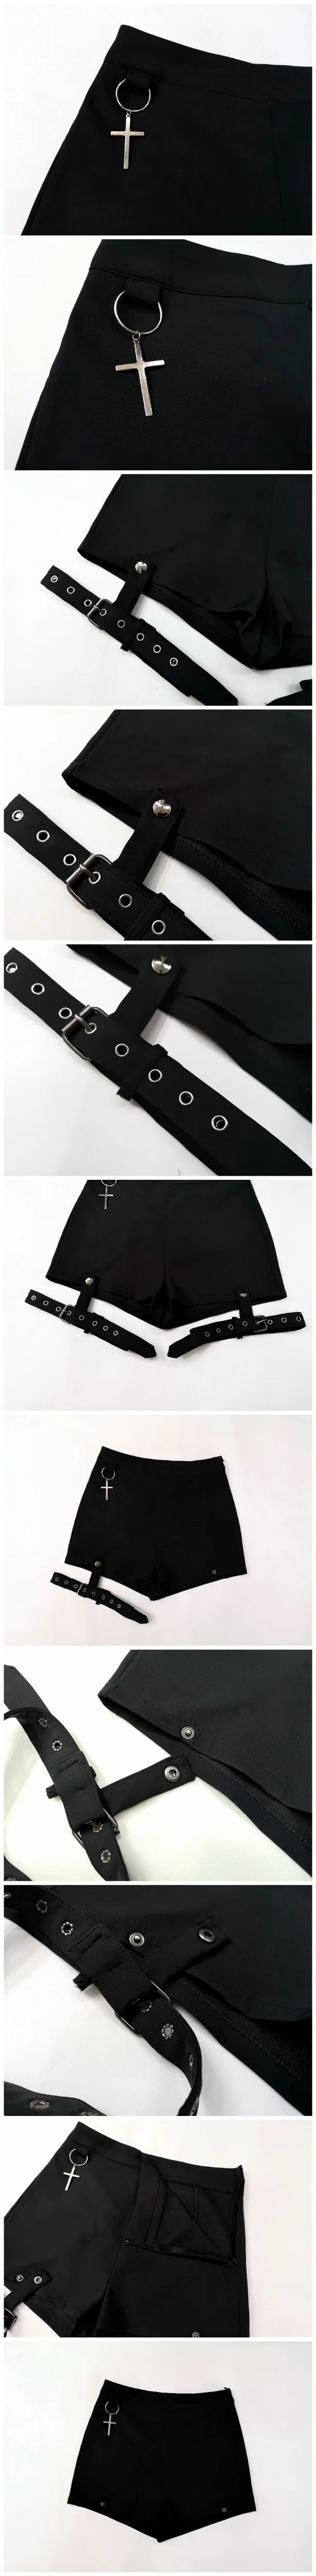 LMCAVASUN летние женские шорты в стиле панк-рок, сексуальные летние модные черные шорты с перекрещивающимися кольцами и орнаментом